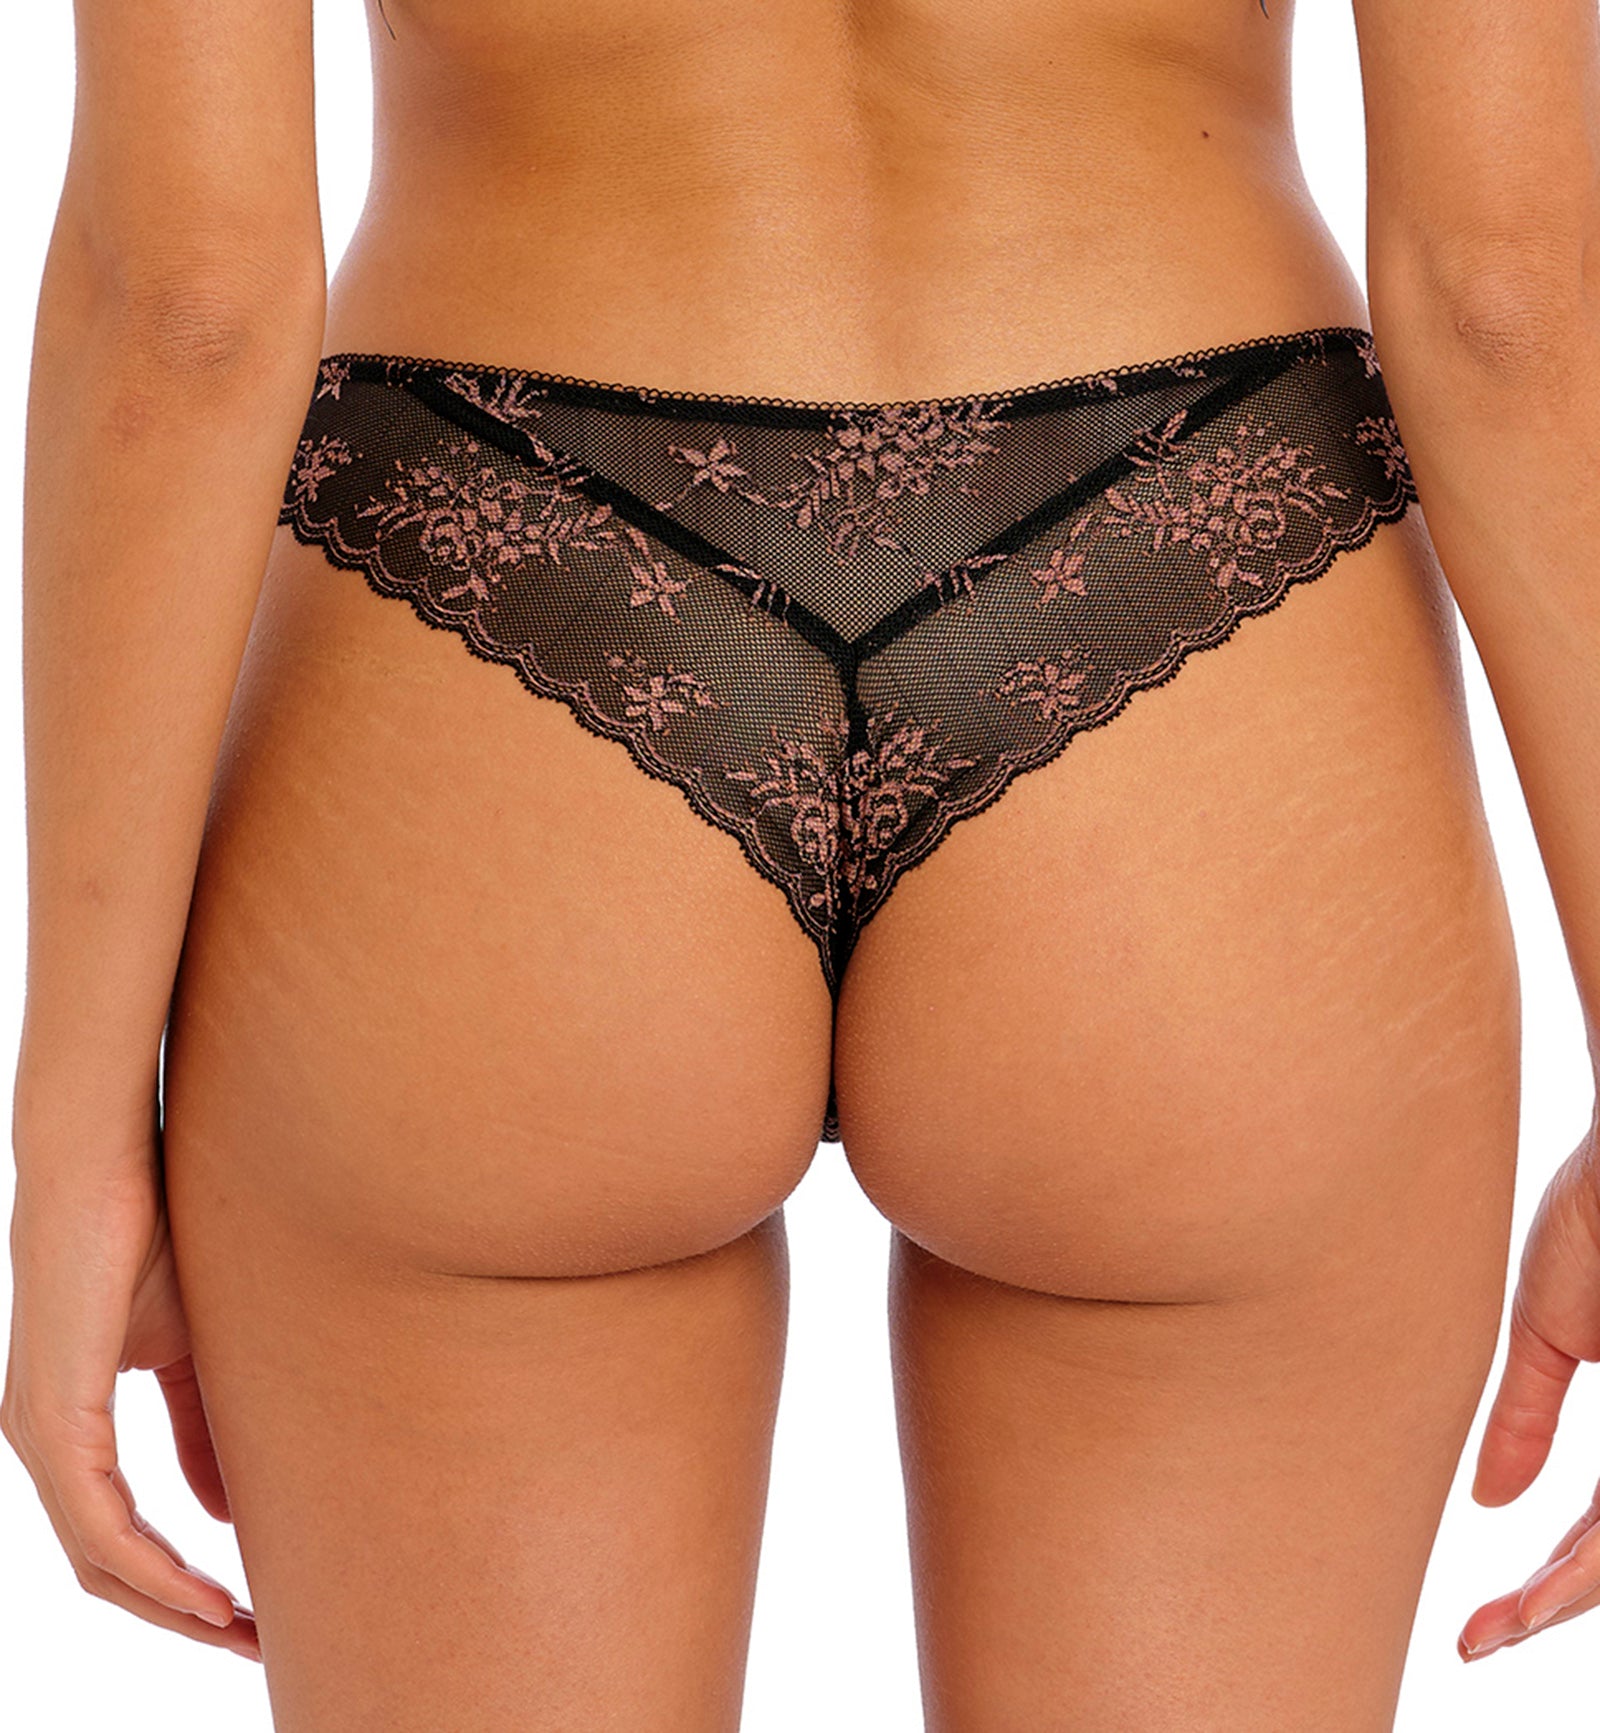 Freya Offbeat Decadence Lace Brazilian Panty (402571),XS,Black - Black,XS